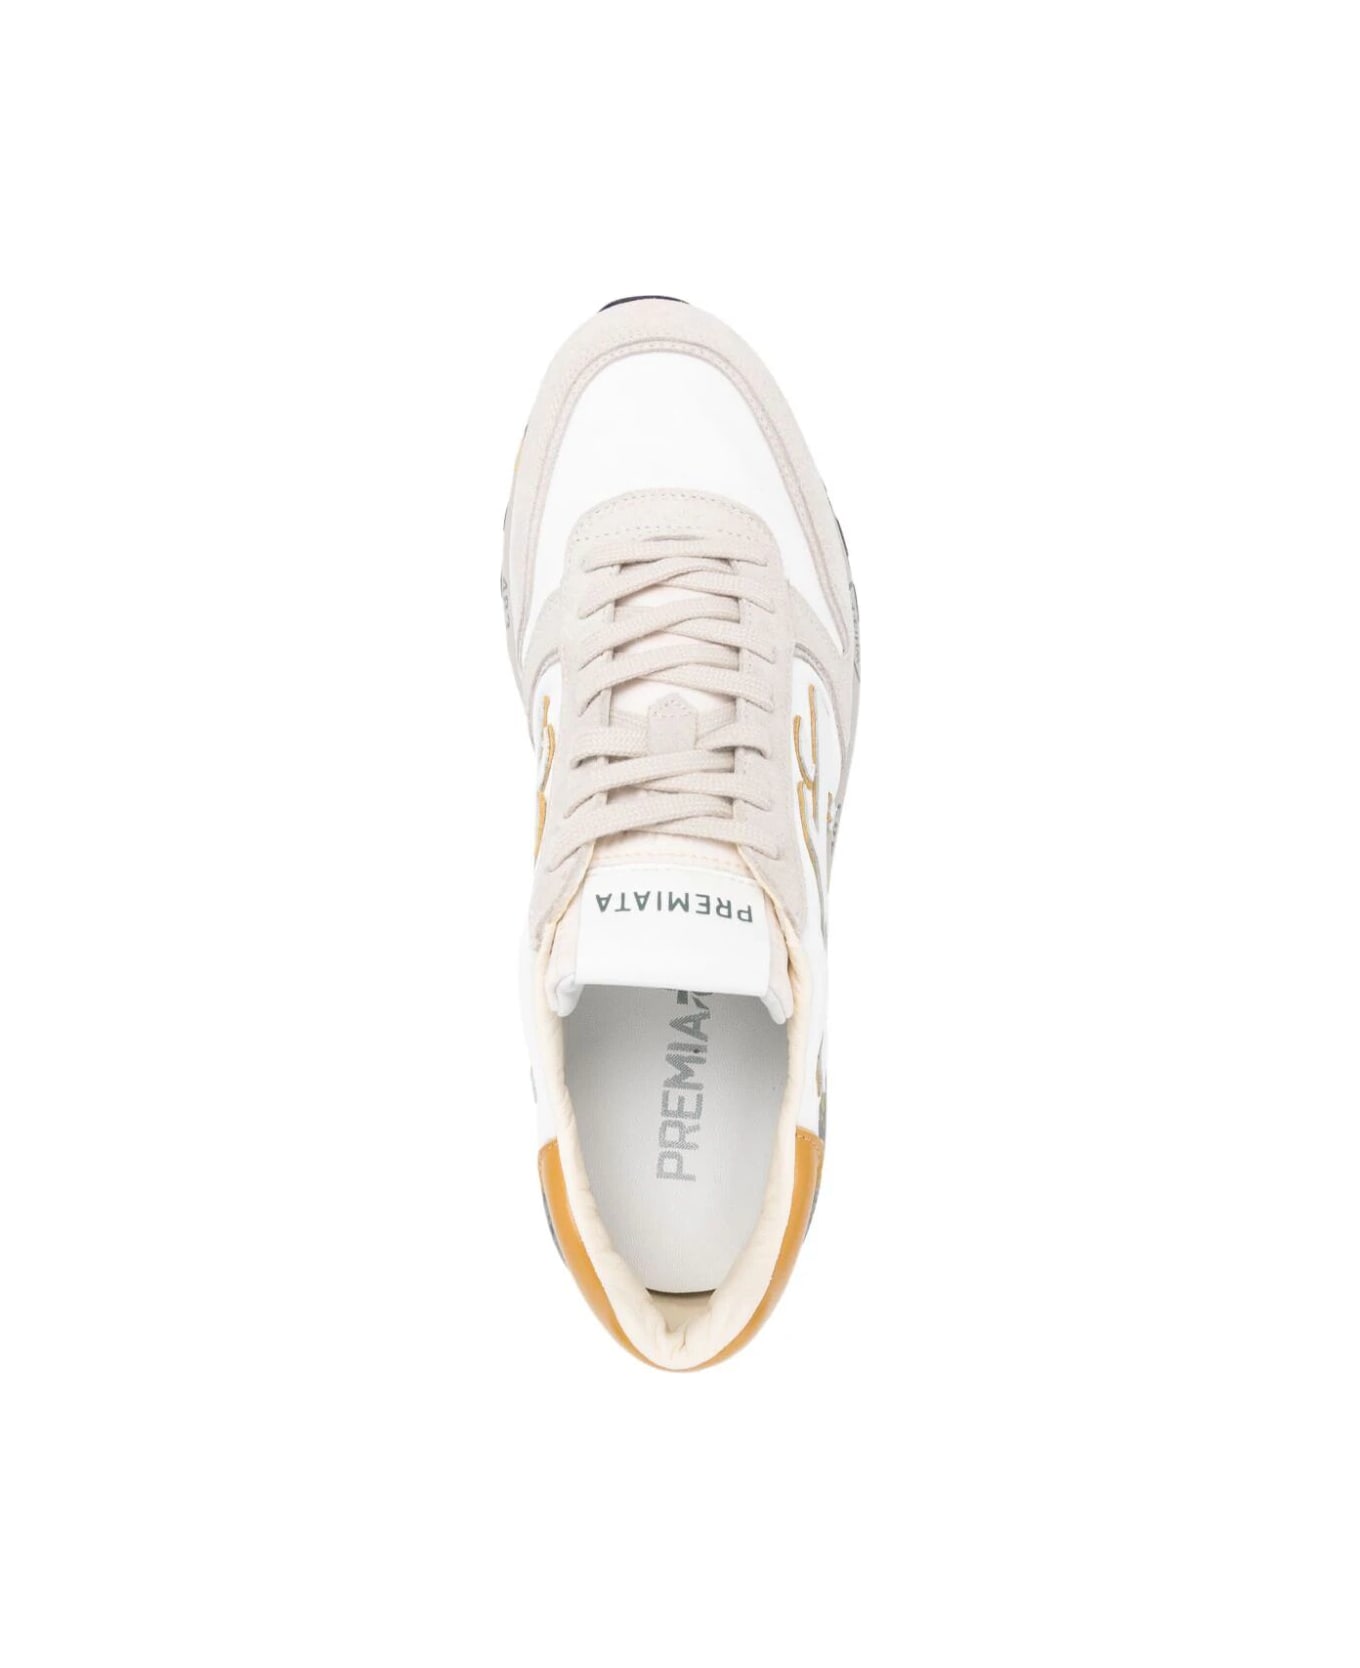 Premiata Mick Bi Material Sneakers - White